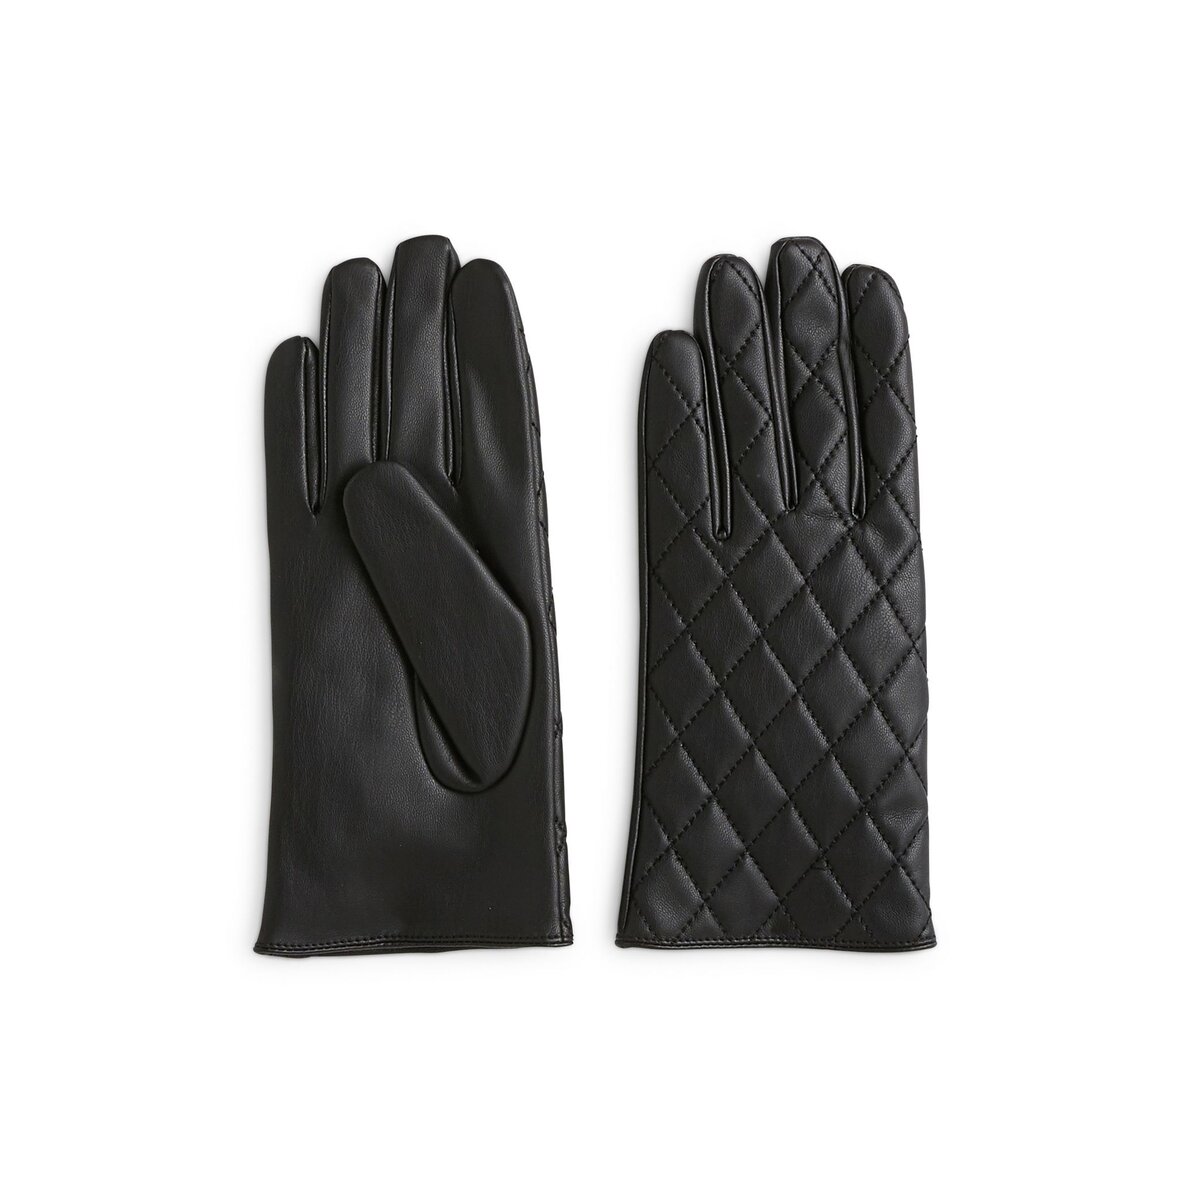 INEXTENSO Paire de gants noir femme pas cher 